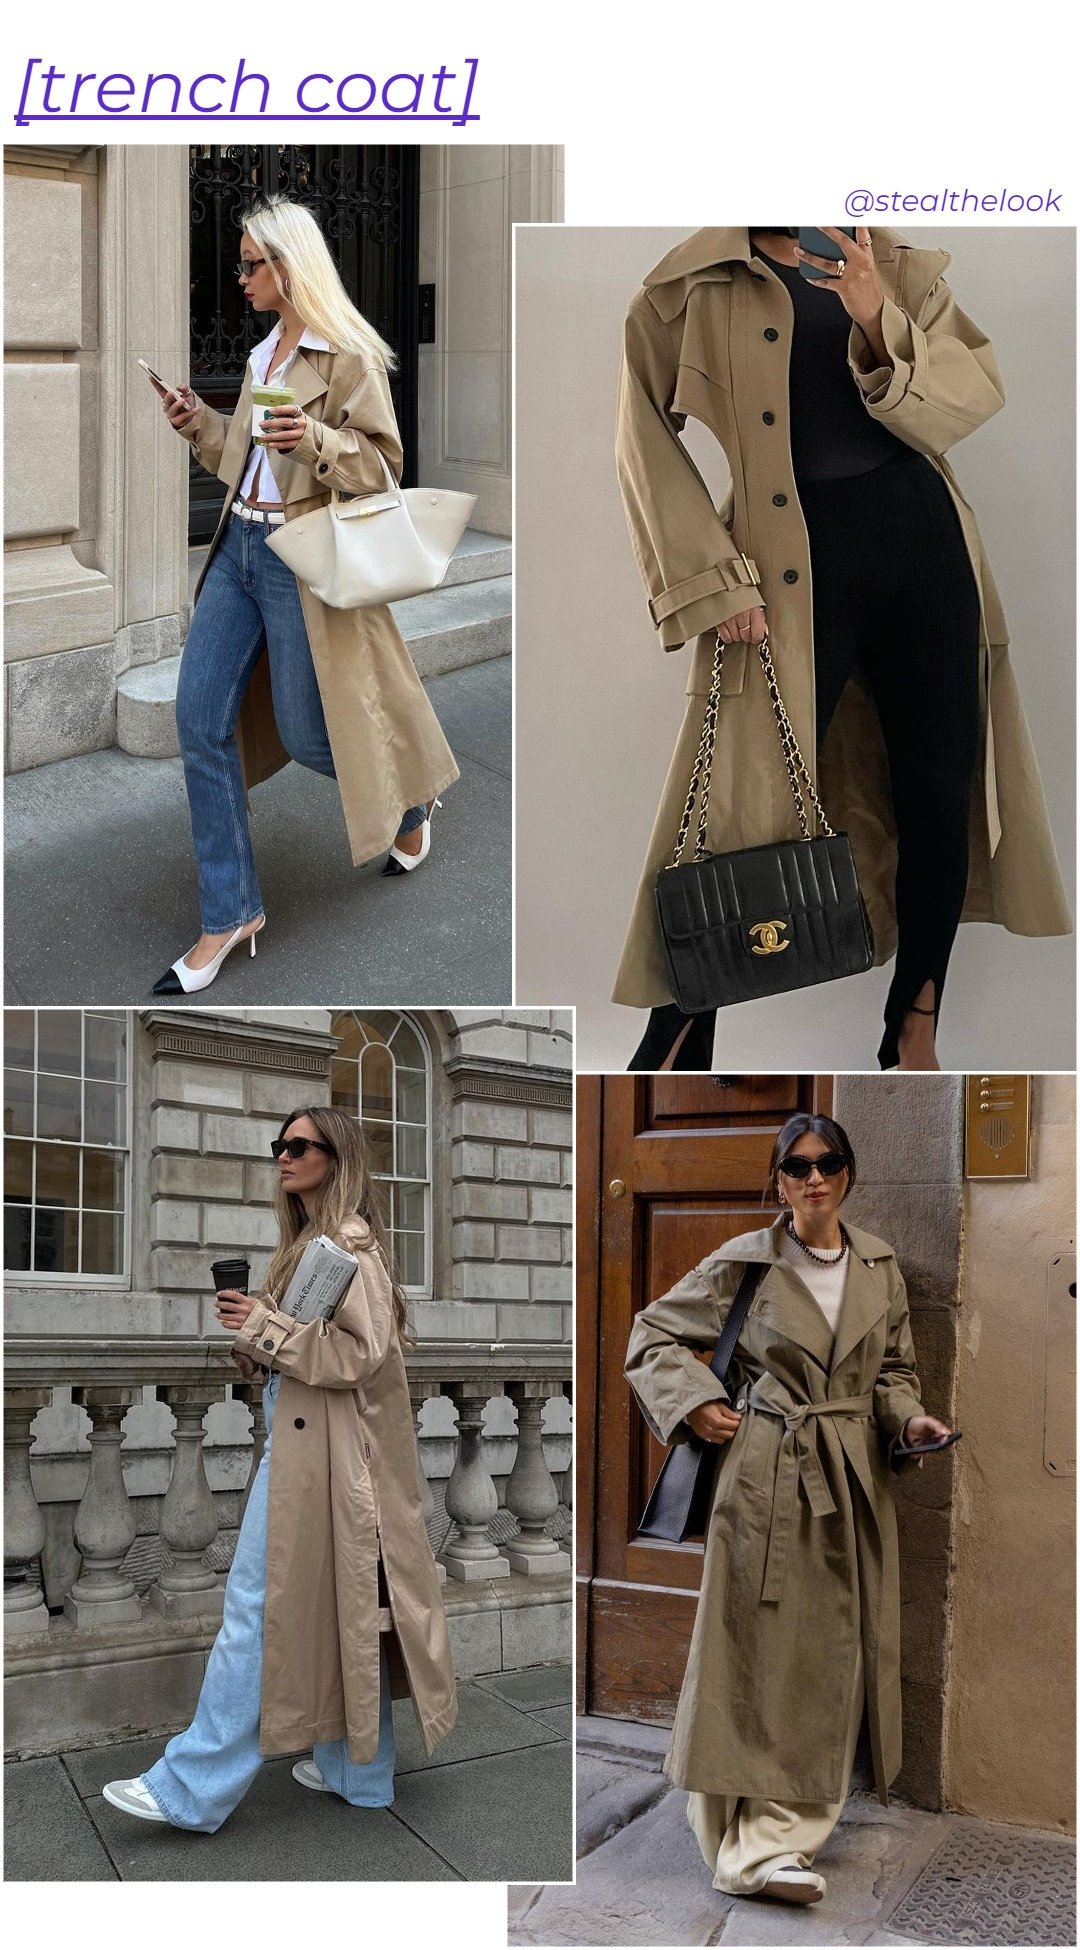 Caroline Lin - Trench coats variados - casacos de inverno - inverno - arte com 4 mulheres diferentes usando trench coats - https://stealthelook.com.br